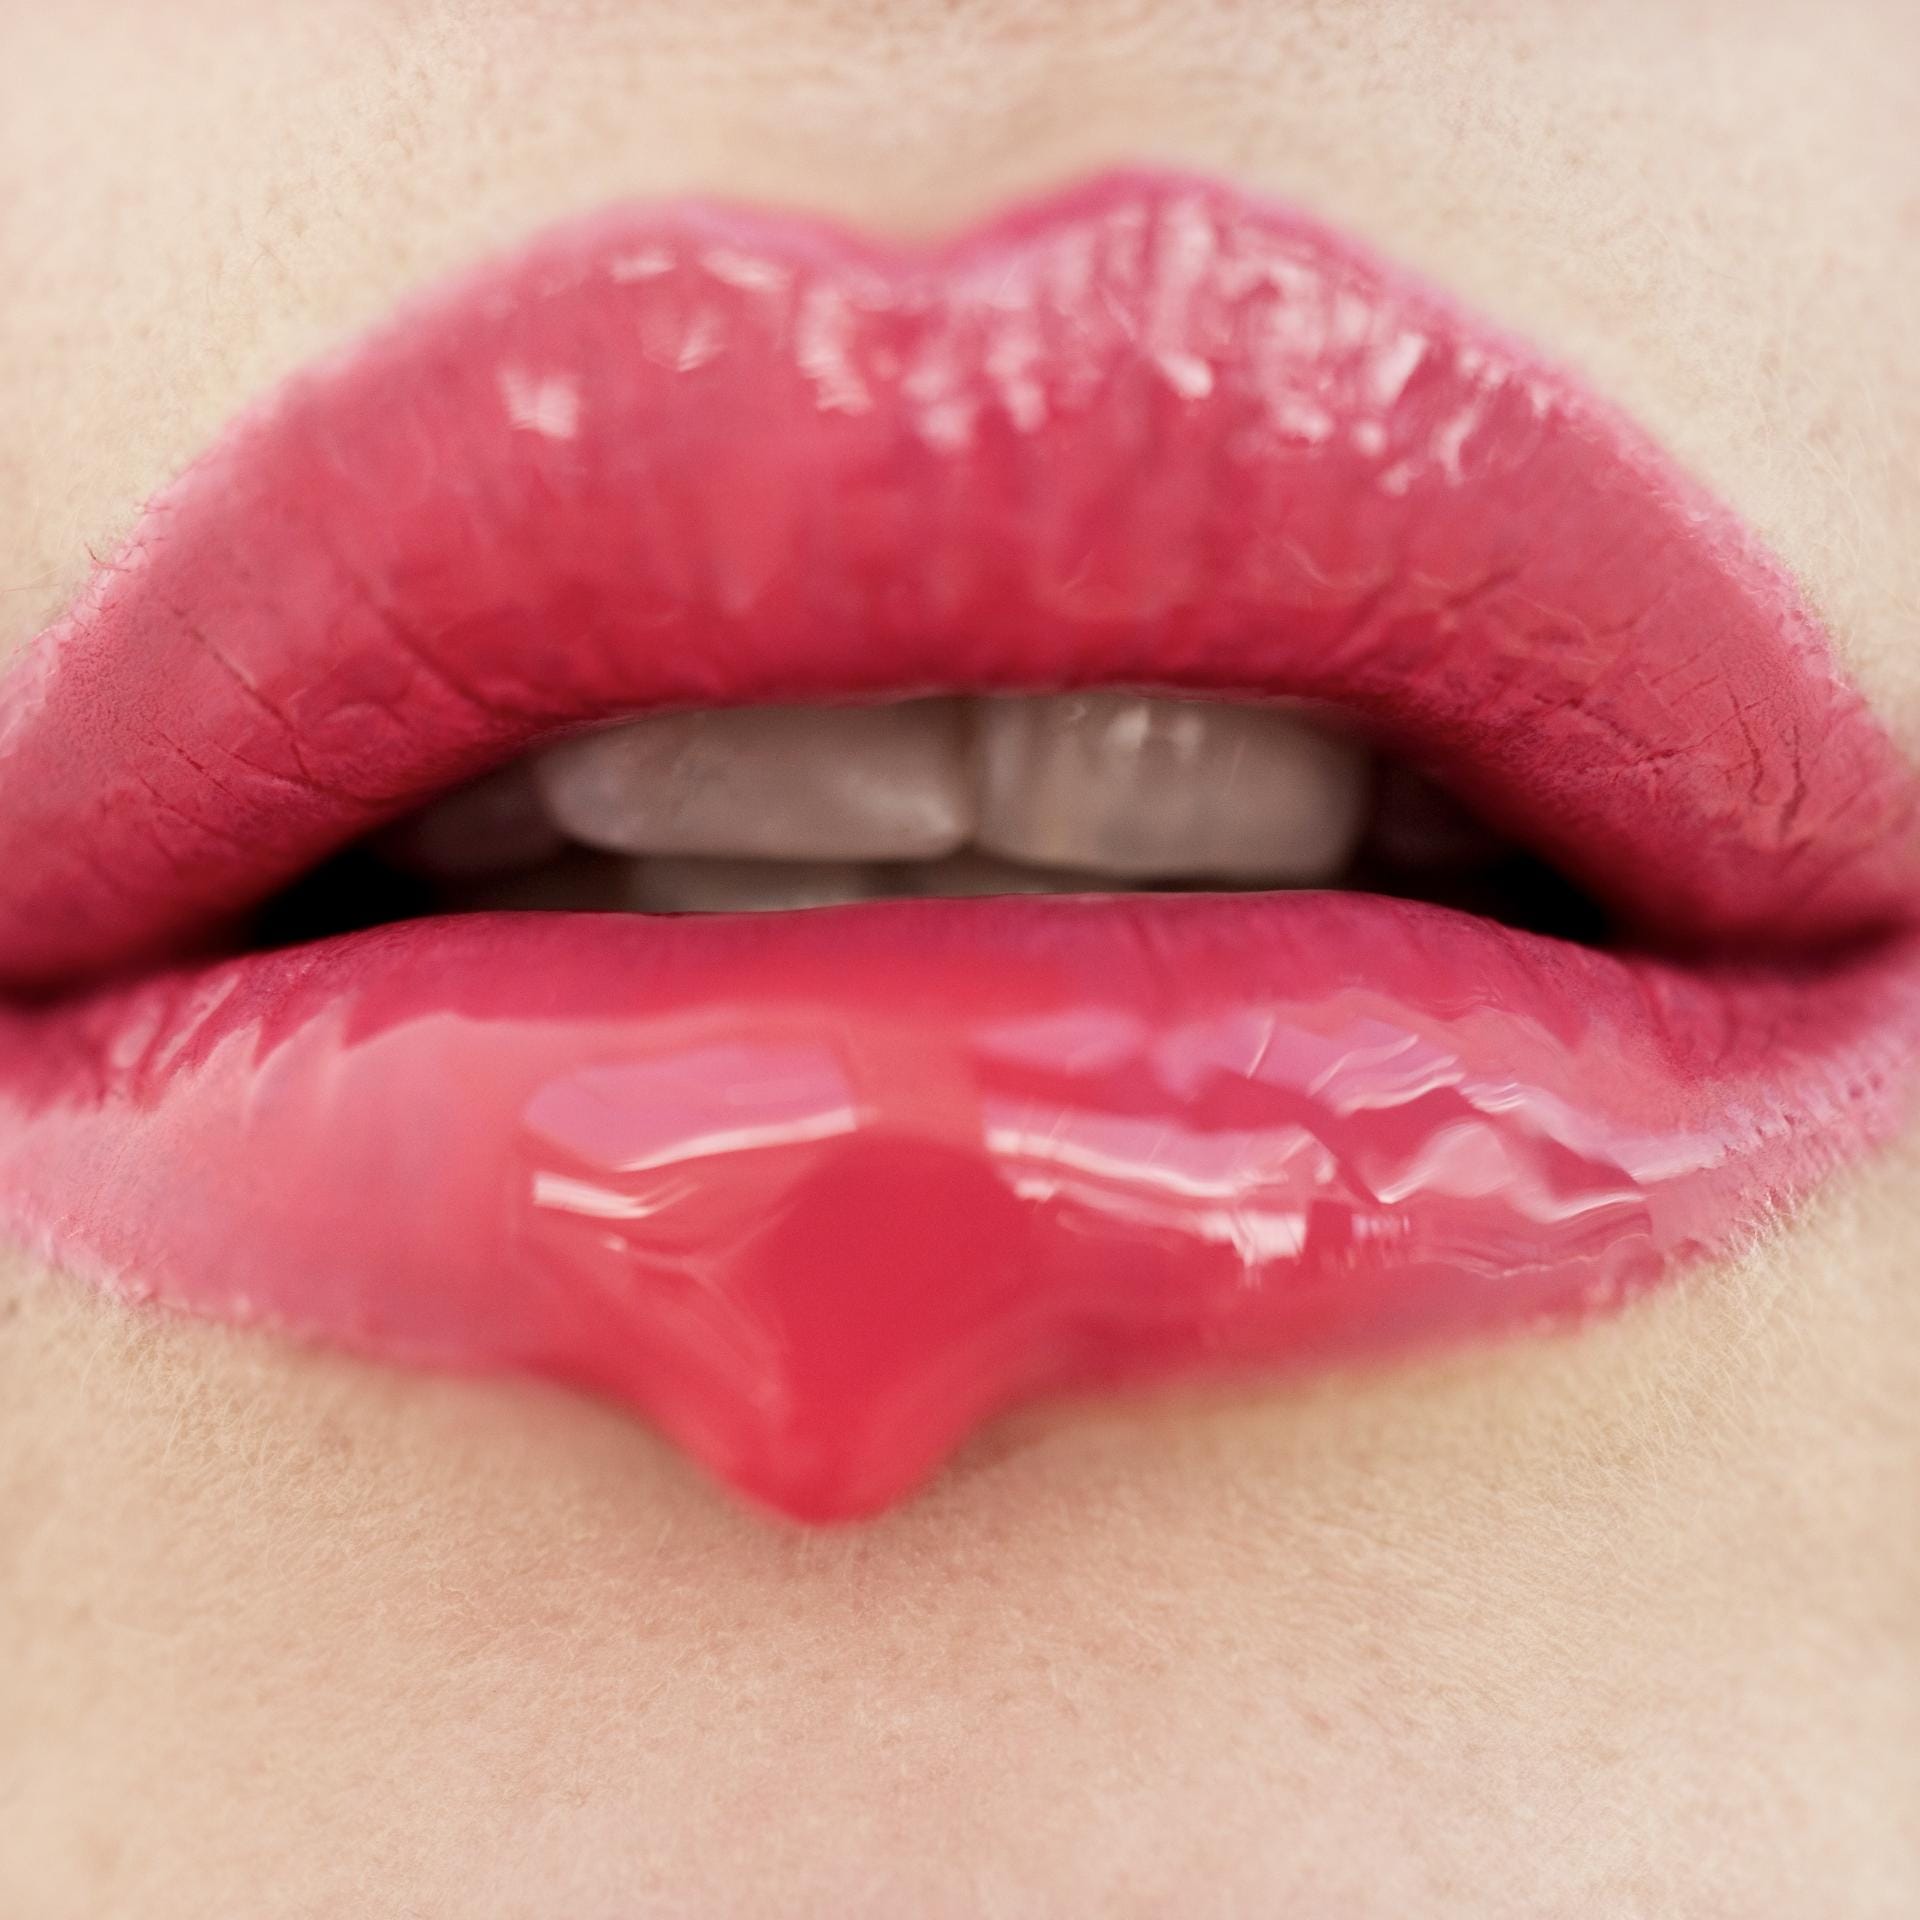 Der Kuss auf die Wange oder auf den Mund sollte lautlos sein. Laute Schmatzgeräusche und triefend-feuchte Lippen sind fehl am Platz. Außerdem sollte man die Lippen nicht zu fest und lang aufdrücken - aber auch nicht zu kurz.